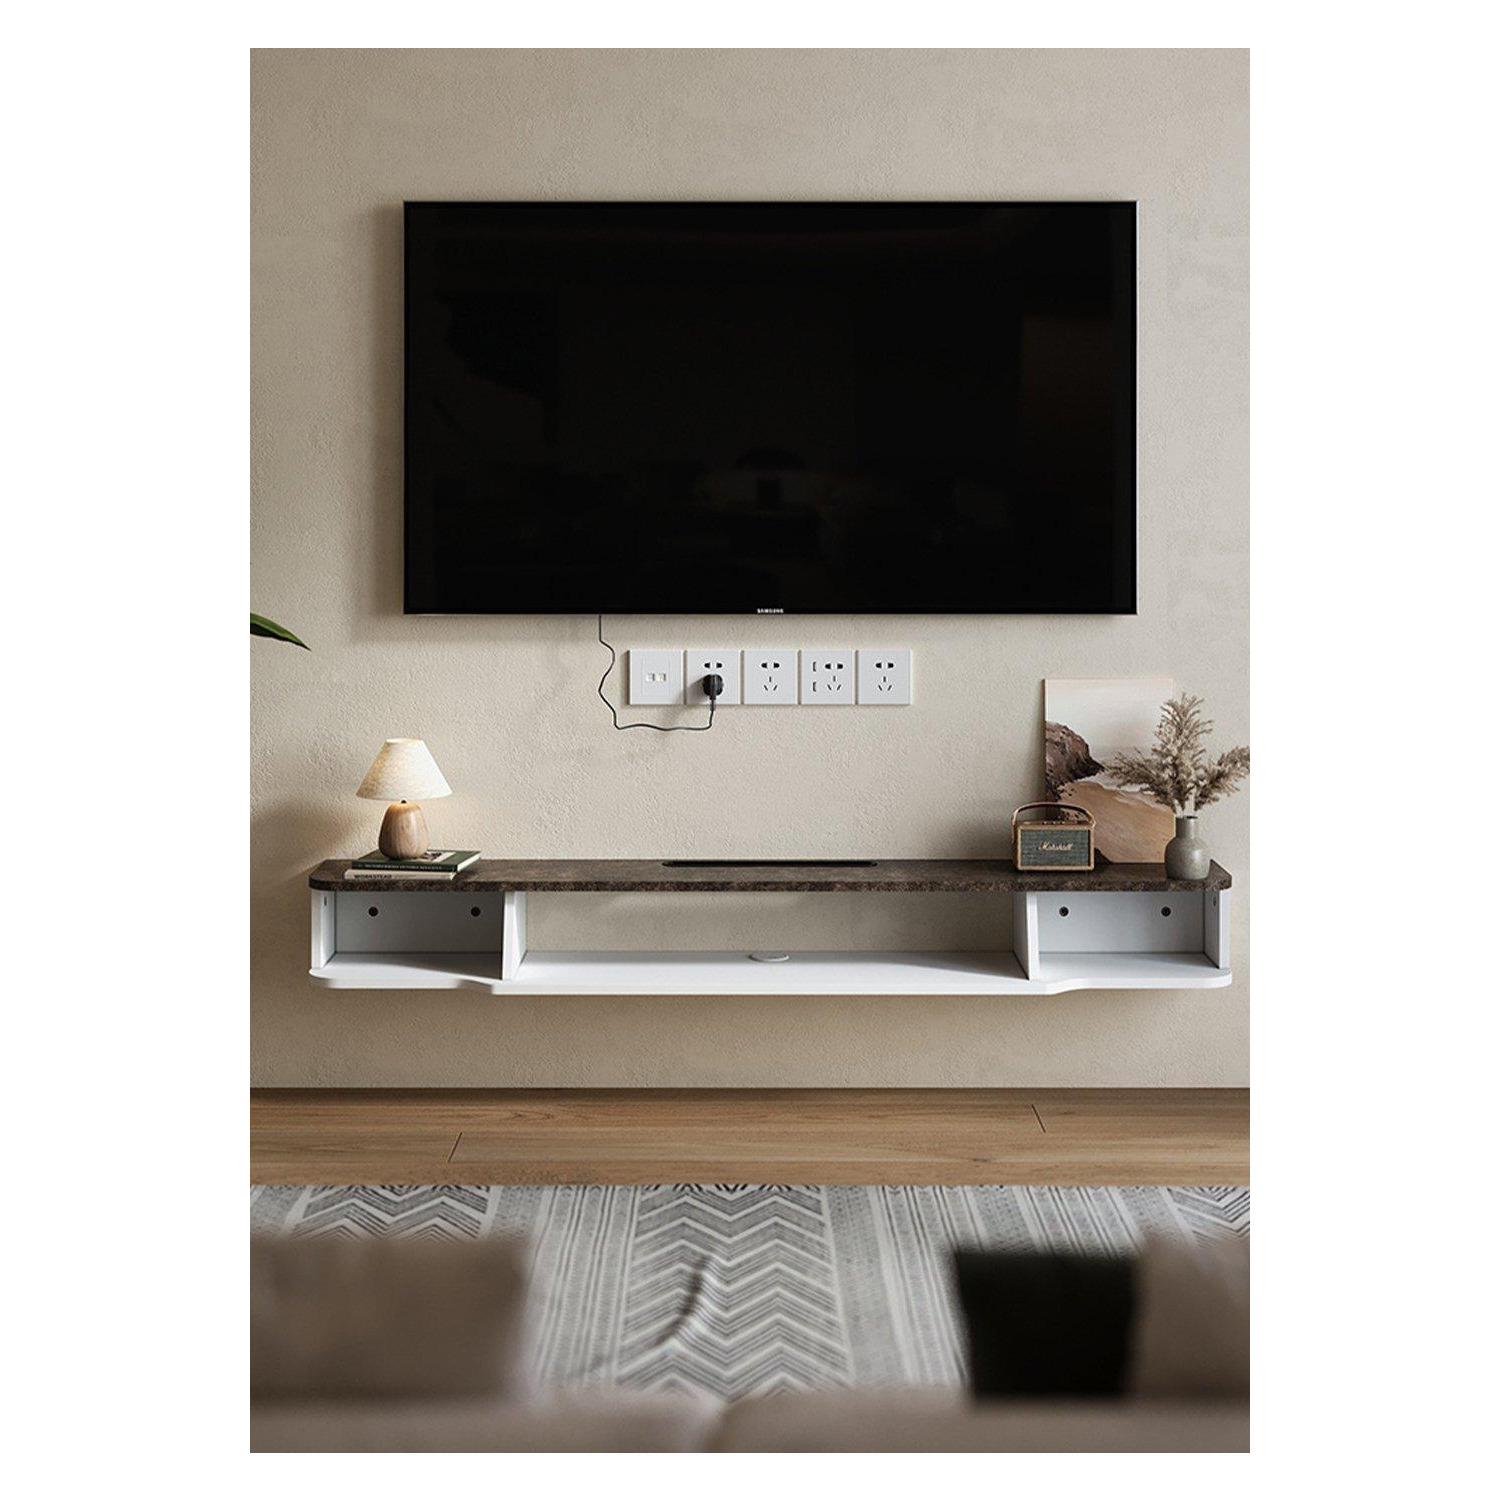 Floating TV Unit Wall Mount TV Cabinet Shelves Modern Storage - image 1